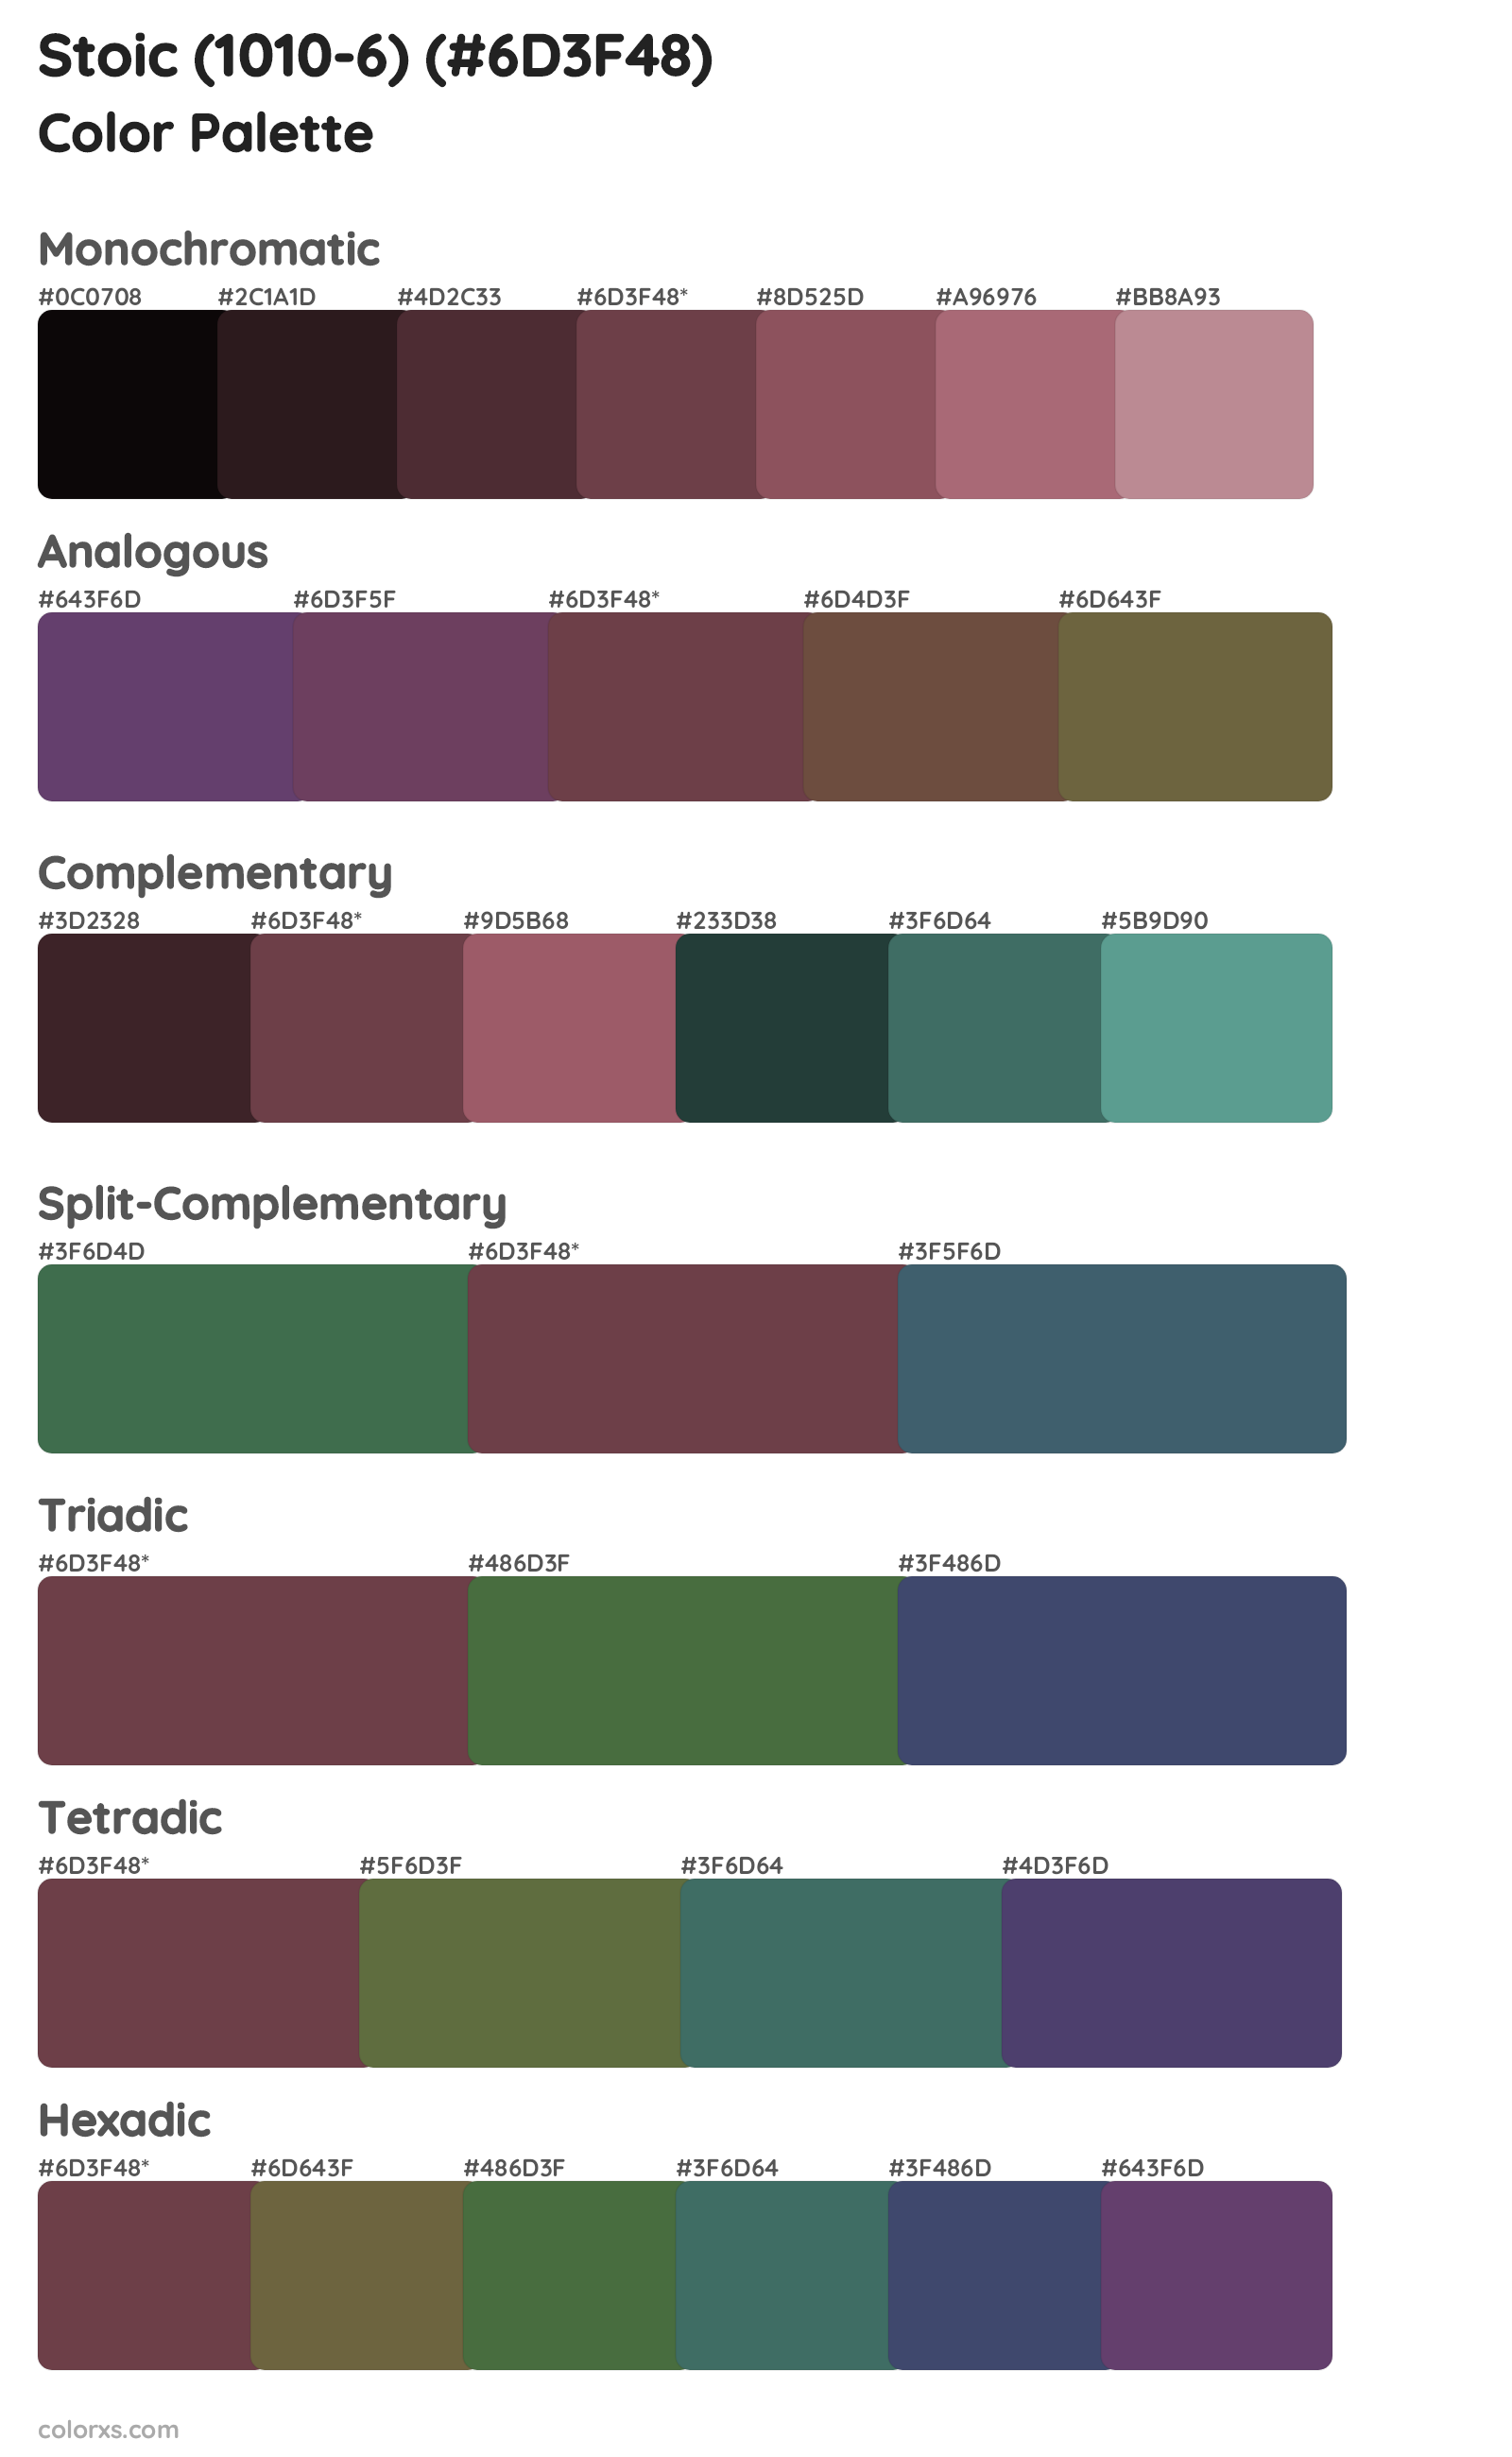 Stoic (1010-6) Color Scheme Palettes